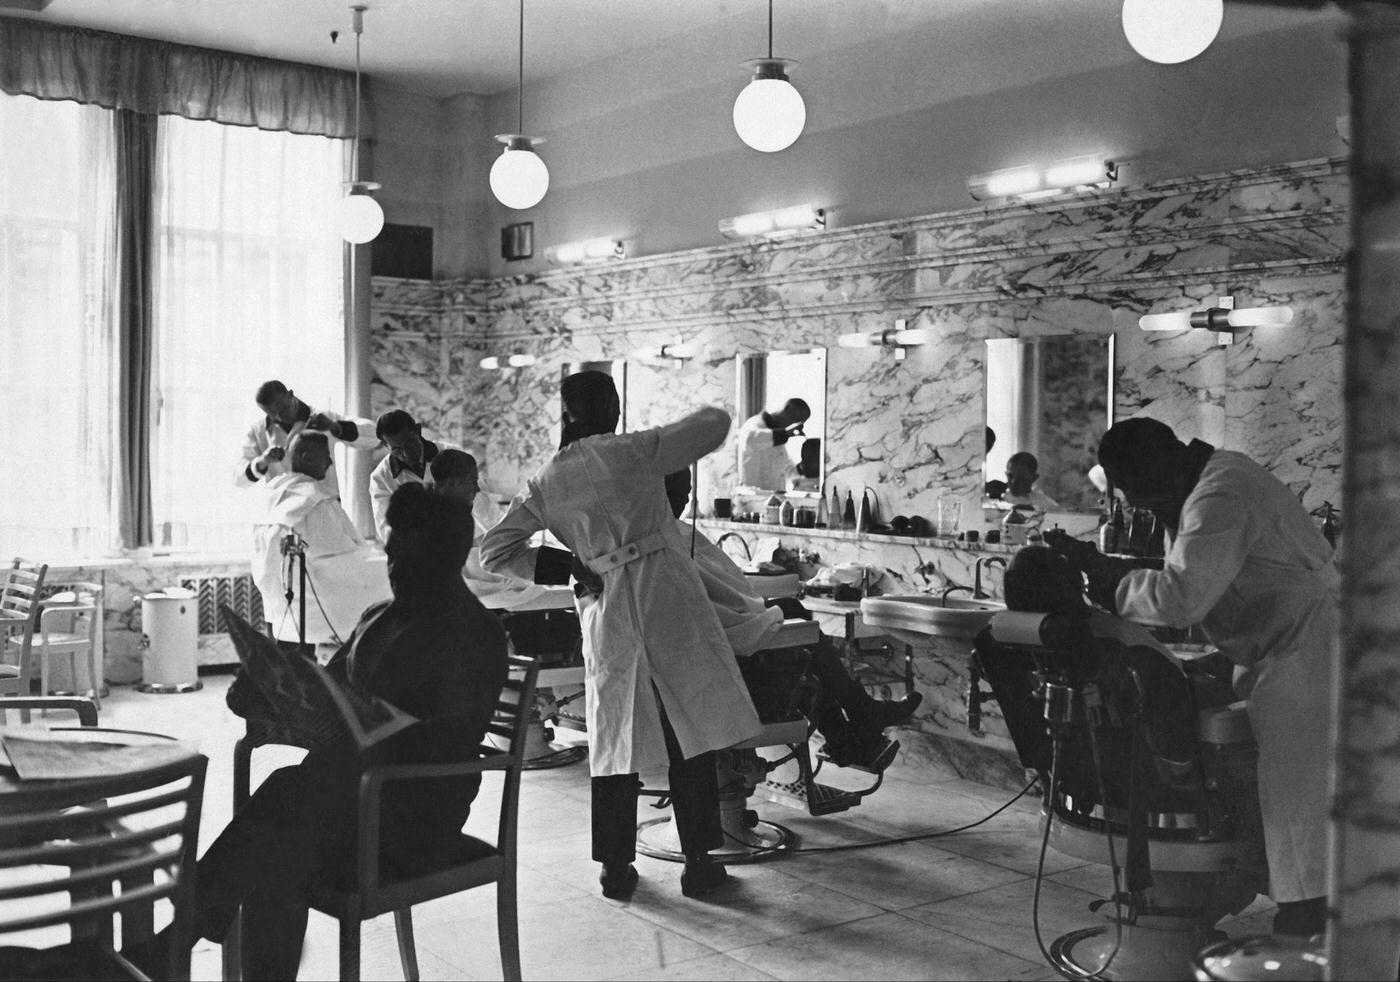 Hair Salon In The Karstadte Department Store, Berlin, 1930s